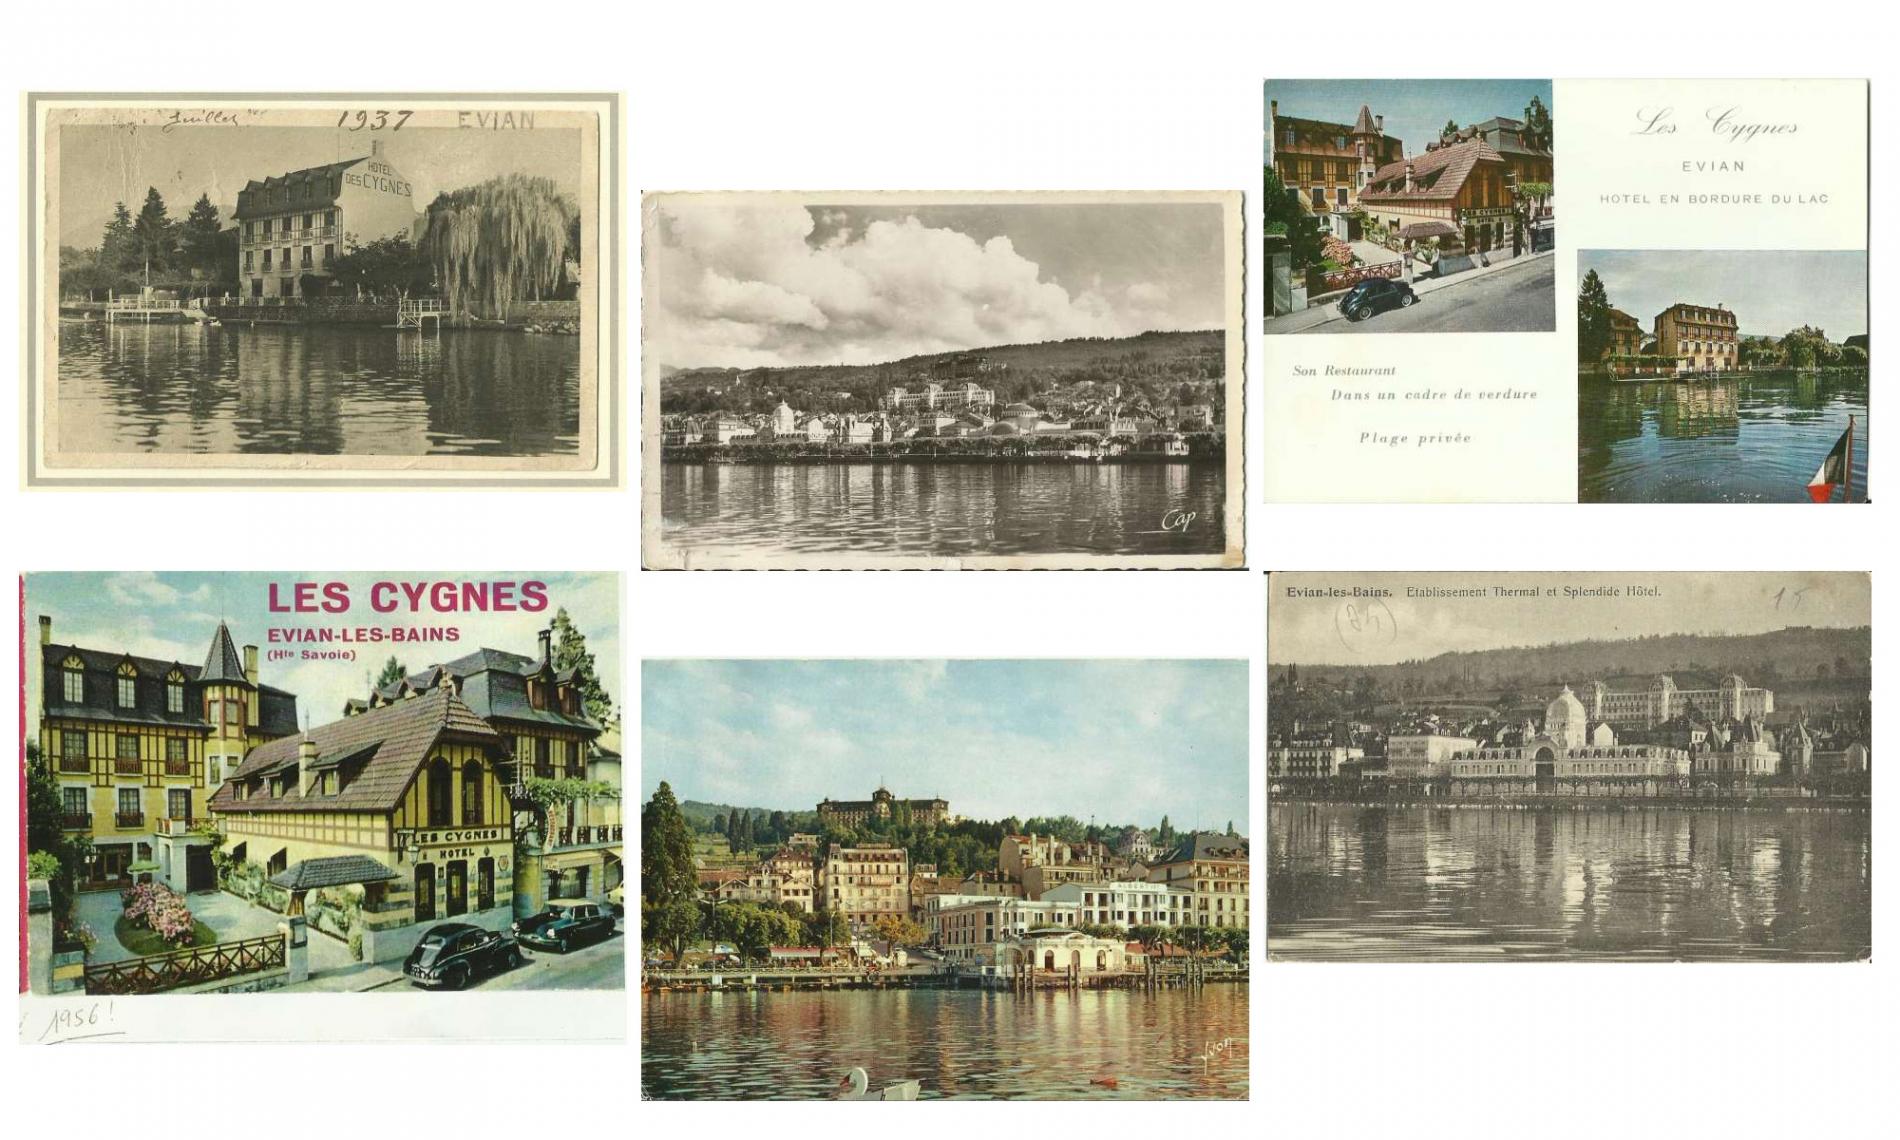 L'histoire de l'hôtel les Cygnes à Evian